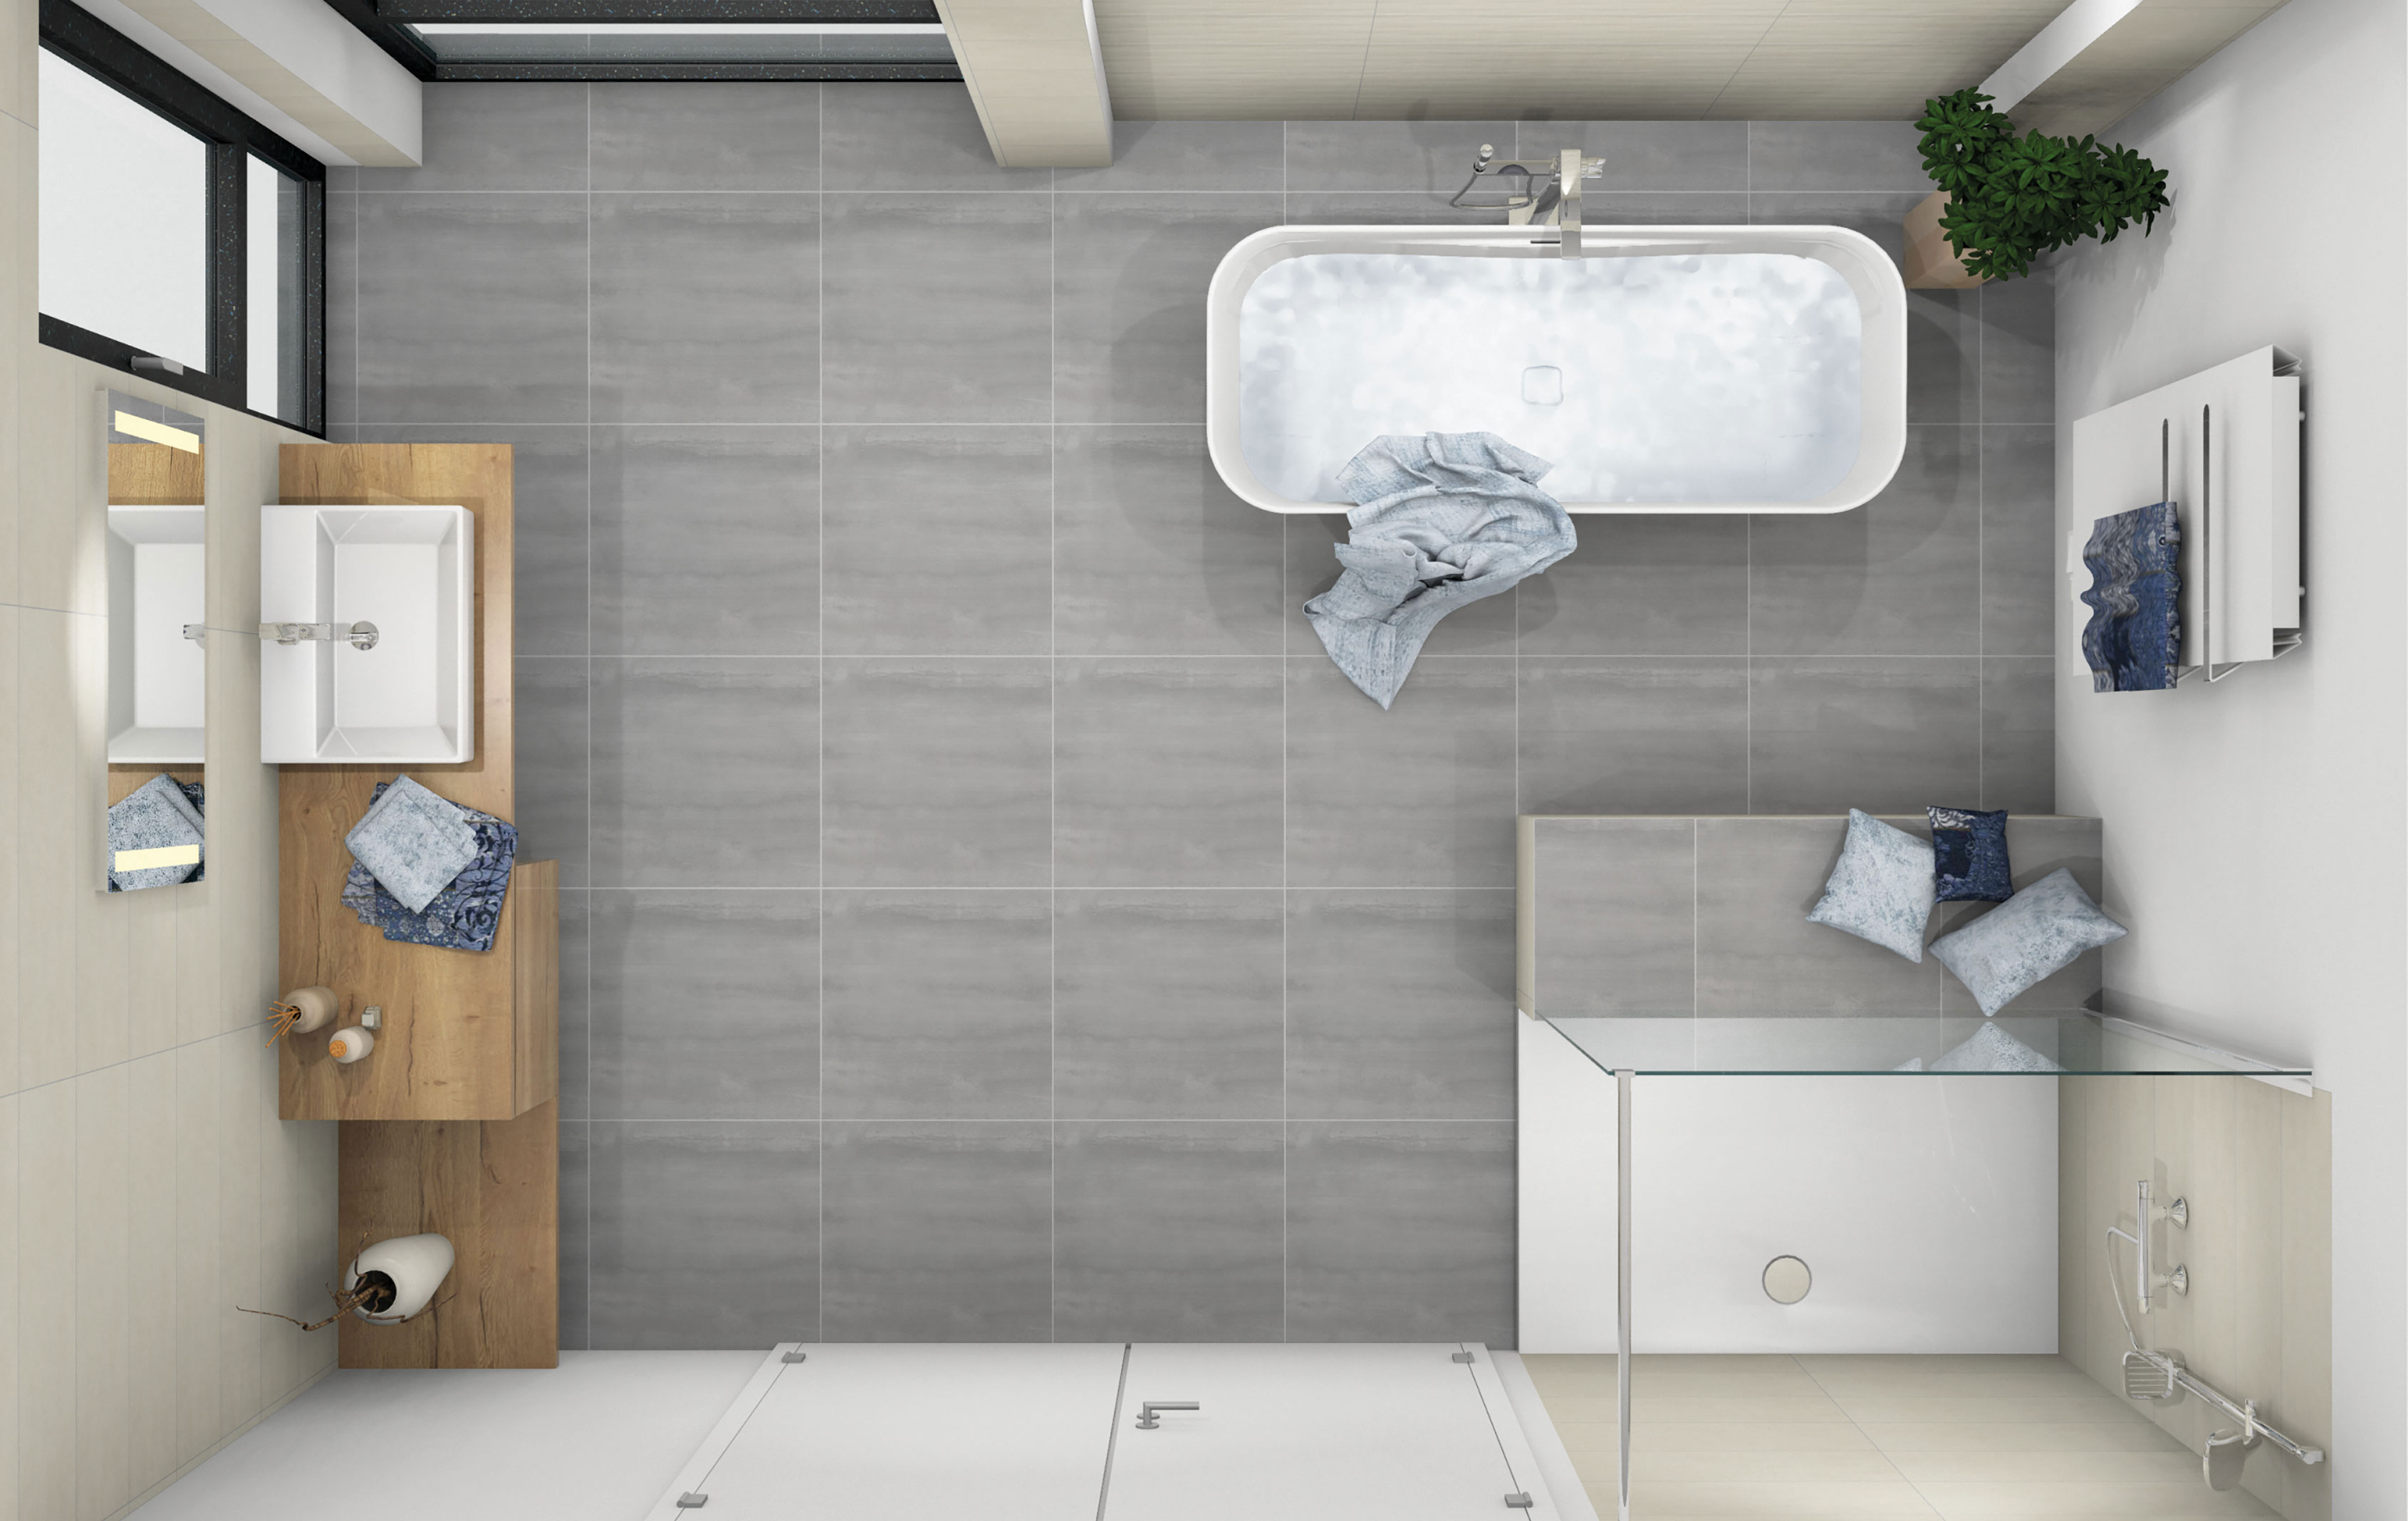 Planungsbeispiel: modernes Badezimmer mit freistehender Badewanne und offener Dusche, Obenansicht